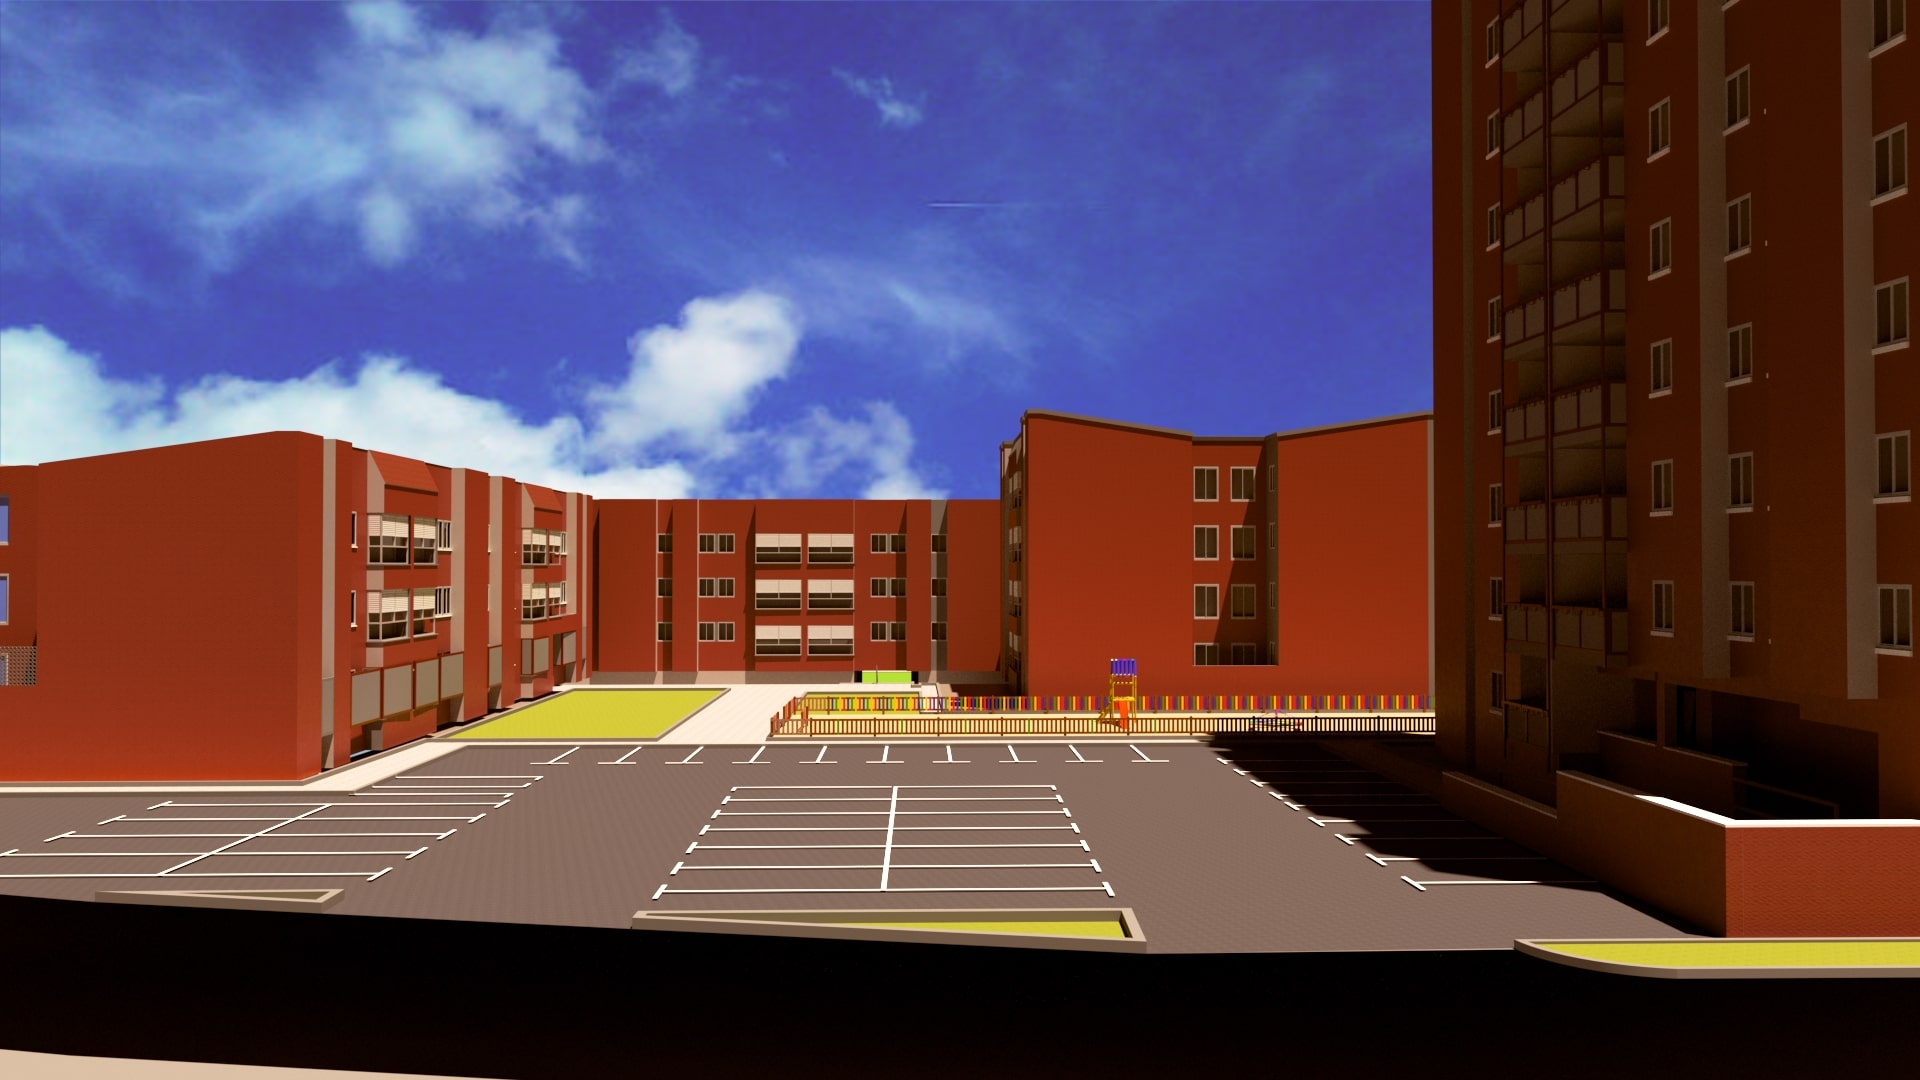 Simulación del aspecto del barrio con acabados en un color único (rojo)